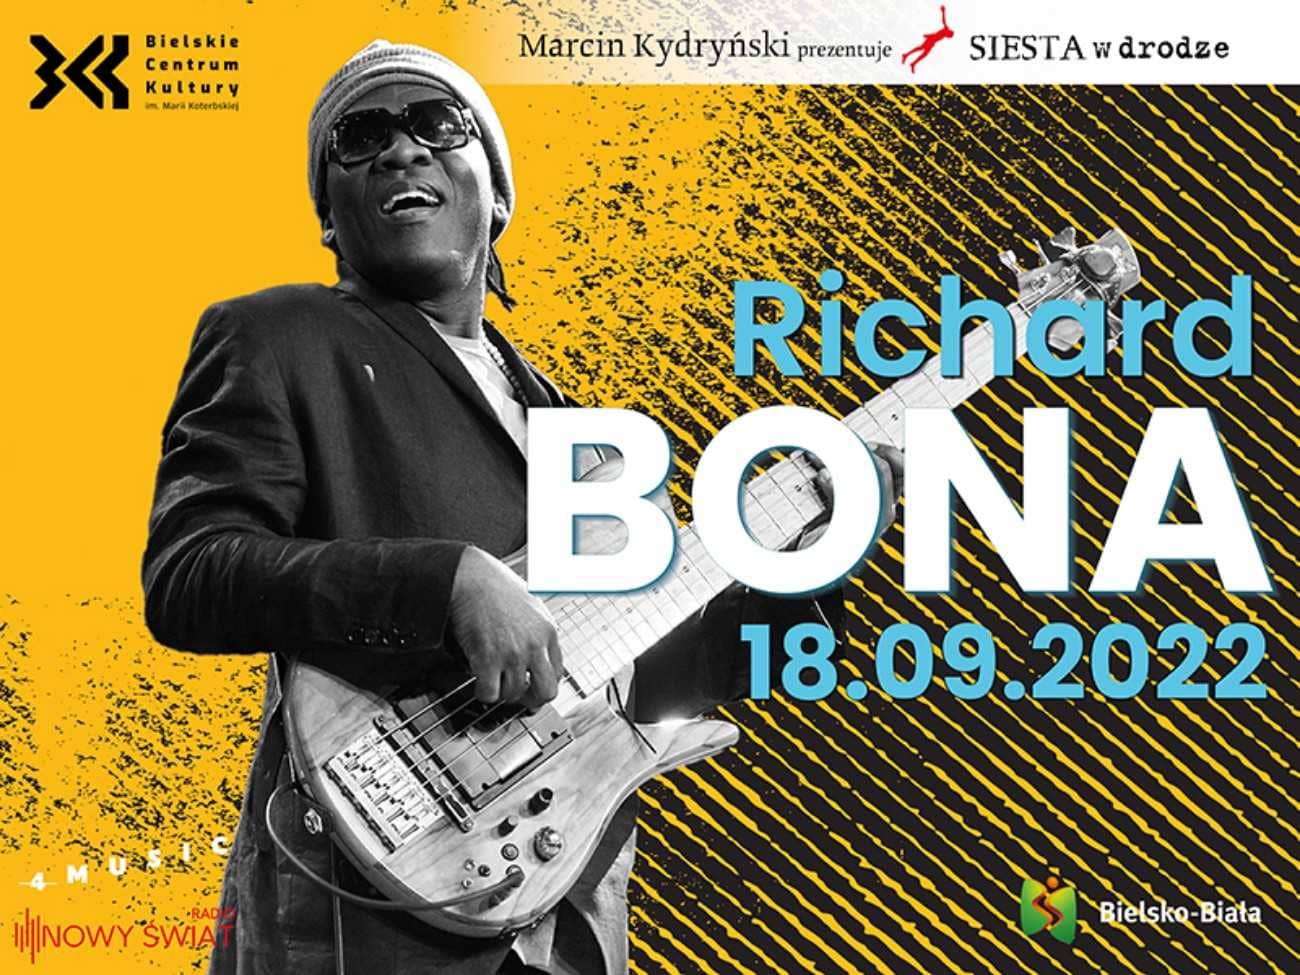 Richard Bona wystąpi w Bielskim Centrum Kultury!